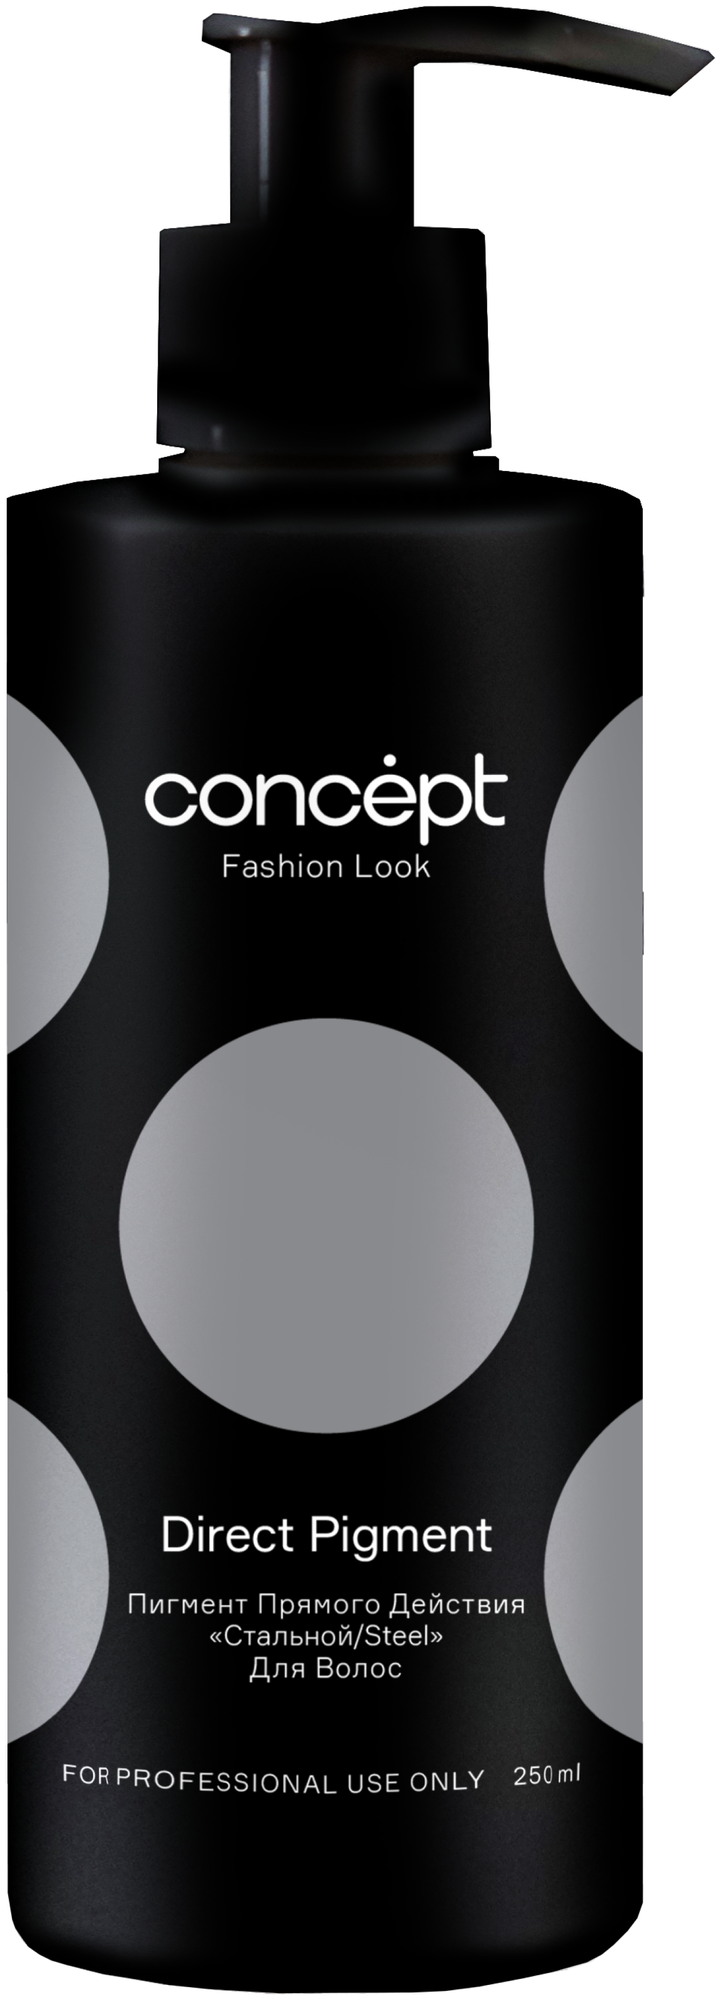 Concept Fashion Look Direct pigment Steel - Концепт Фэшн Лук Стальной пигмент прямого действия, 250 мл -